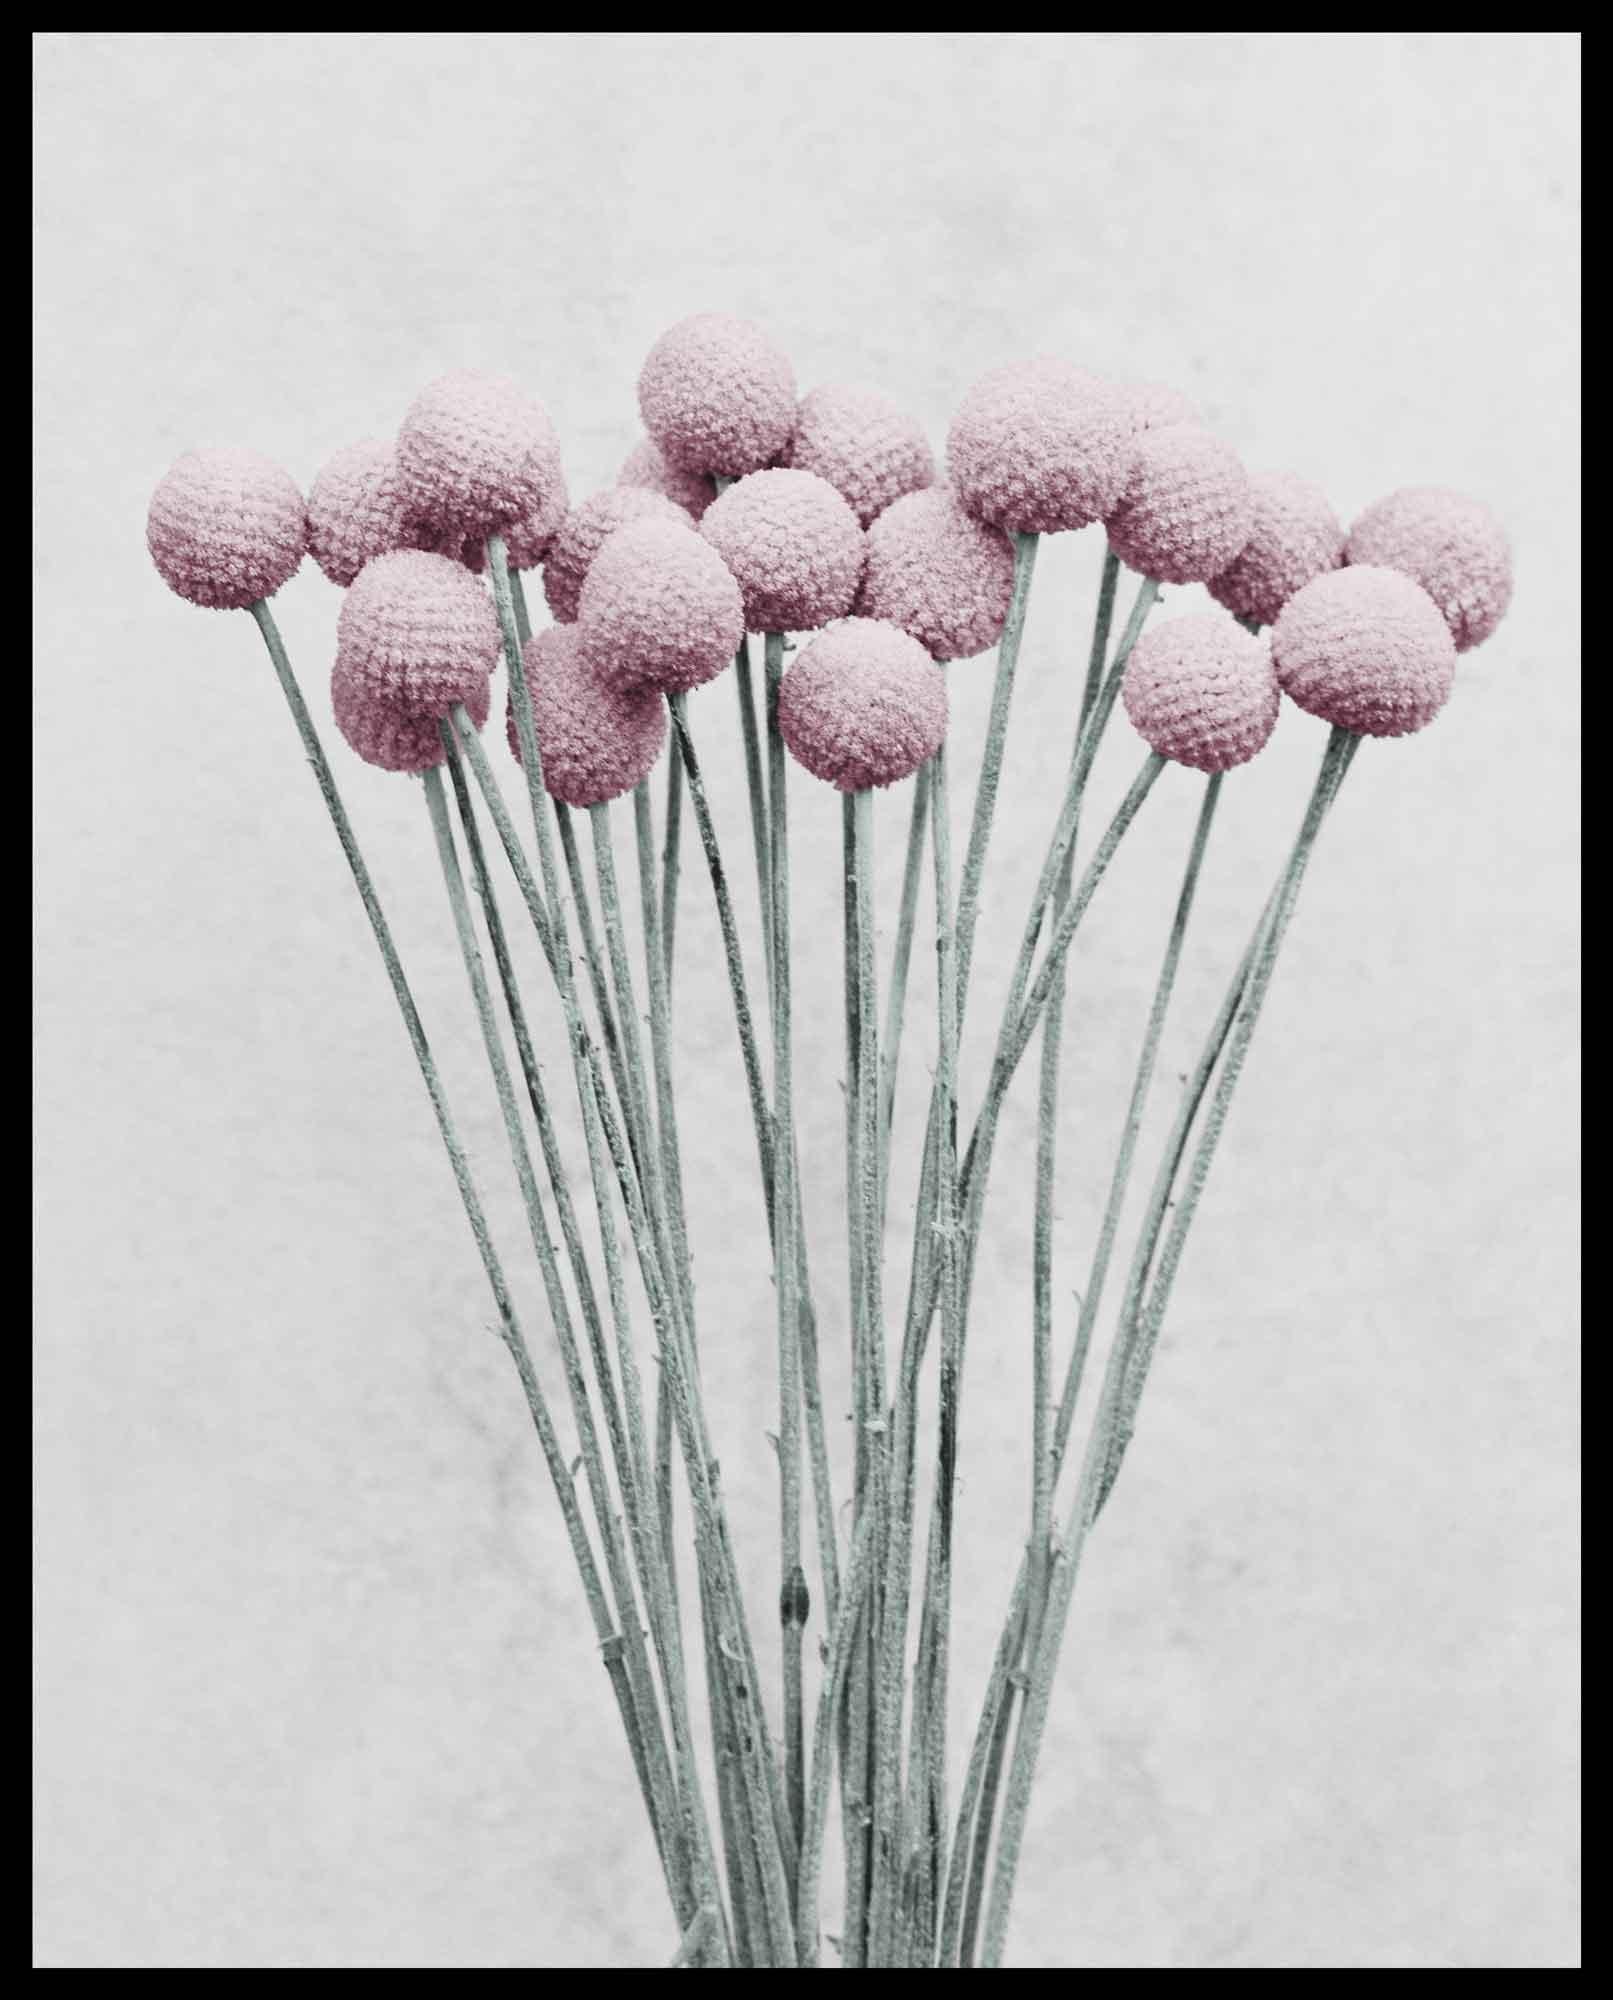 Botanica #19 (Craspedia) - Contemporary Photograph by Vee Speers